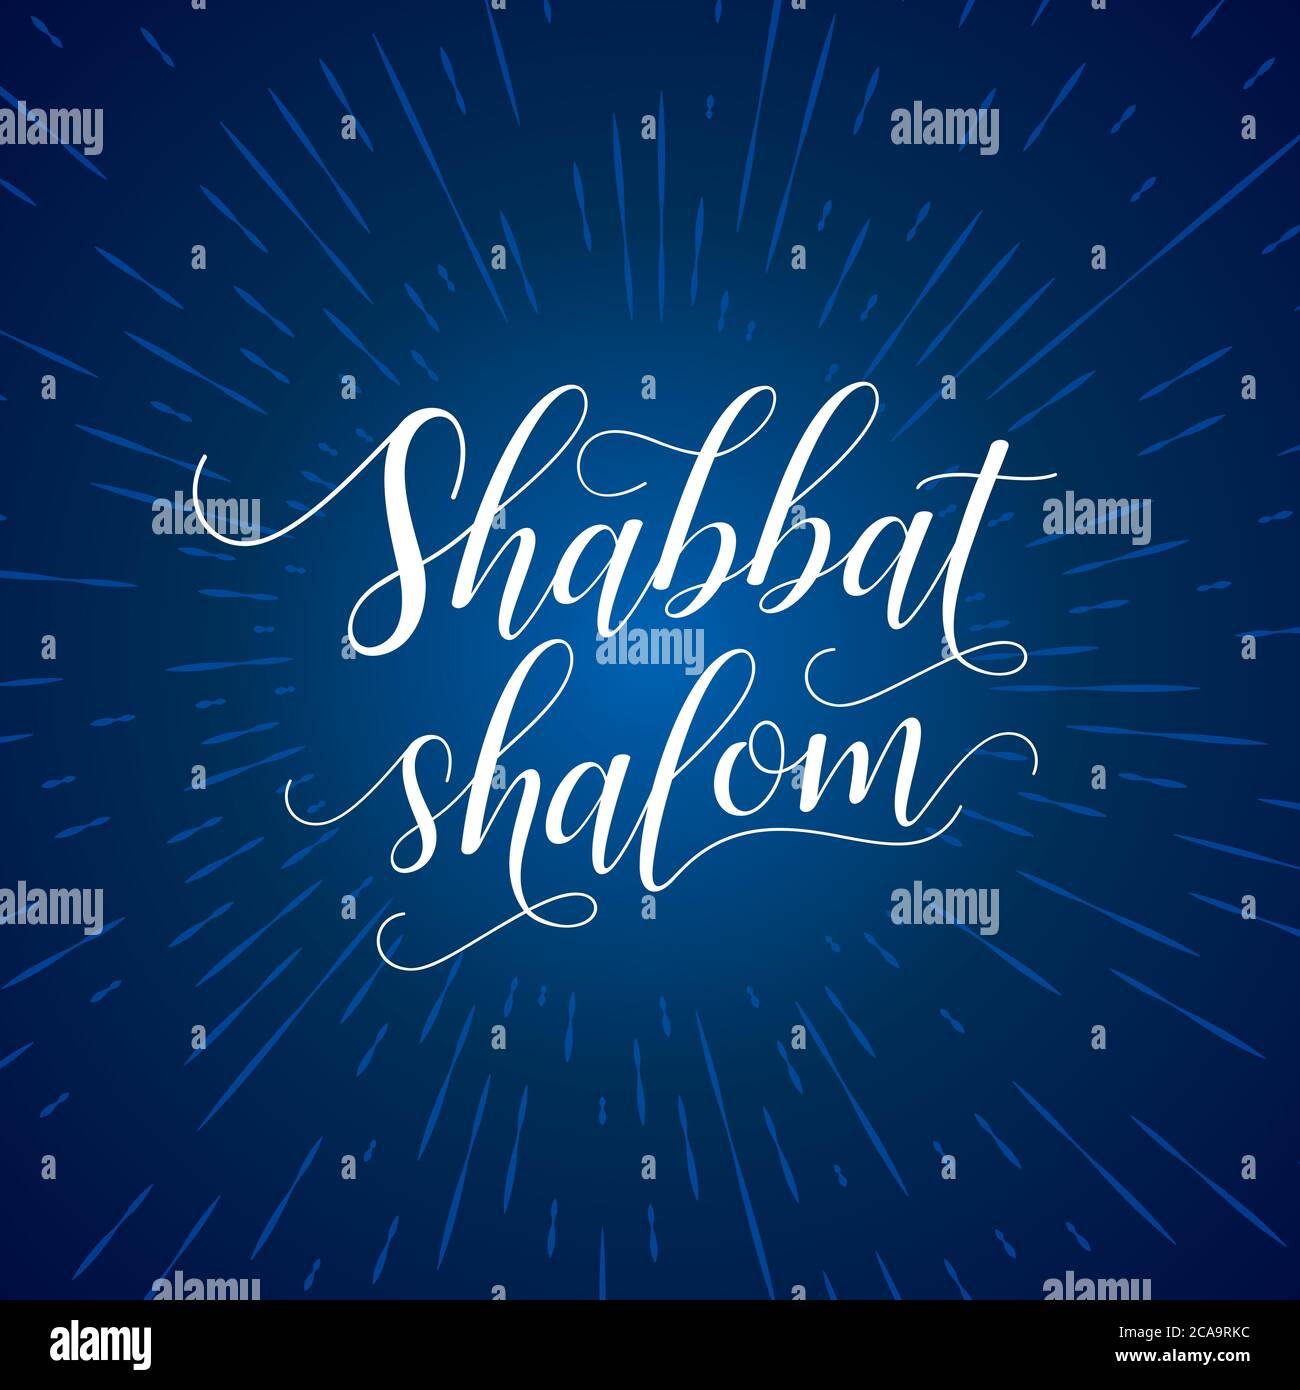 Shabbat Shalom lettering, carte de vœux, illustration vectorielle. Fond bleu foncé avec rayons de lumière et mots hébraïques Shabbat Shalom. Religiou juif Illustration de Vecteur